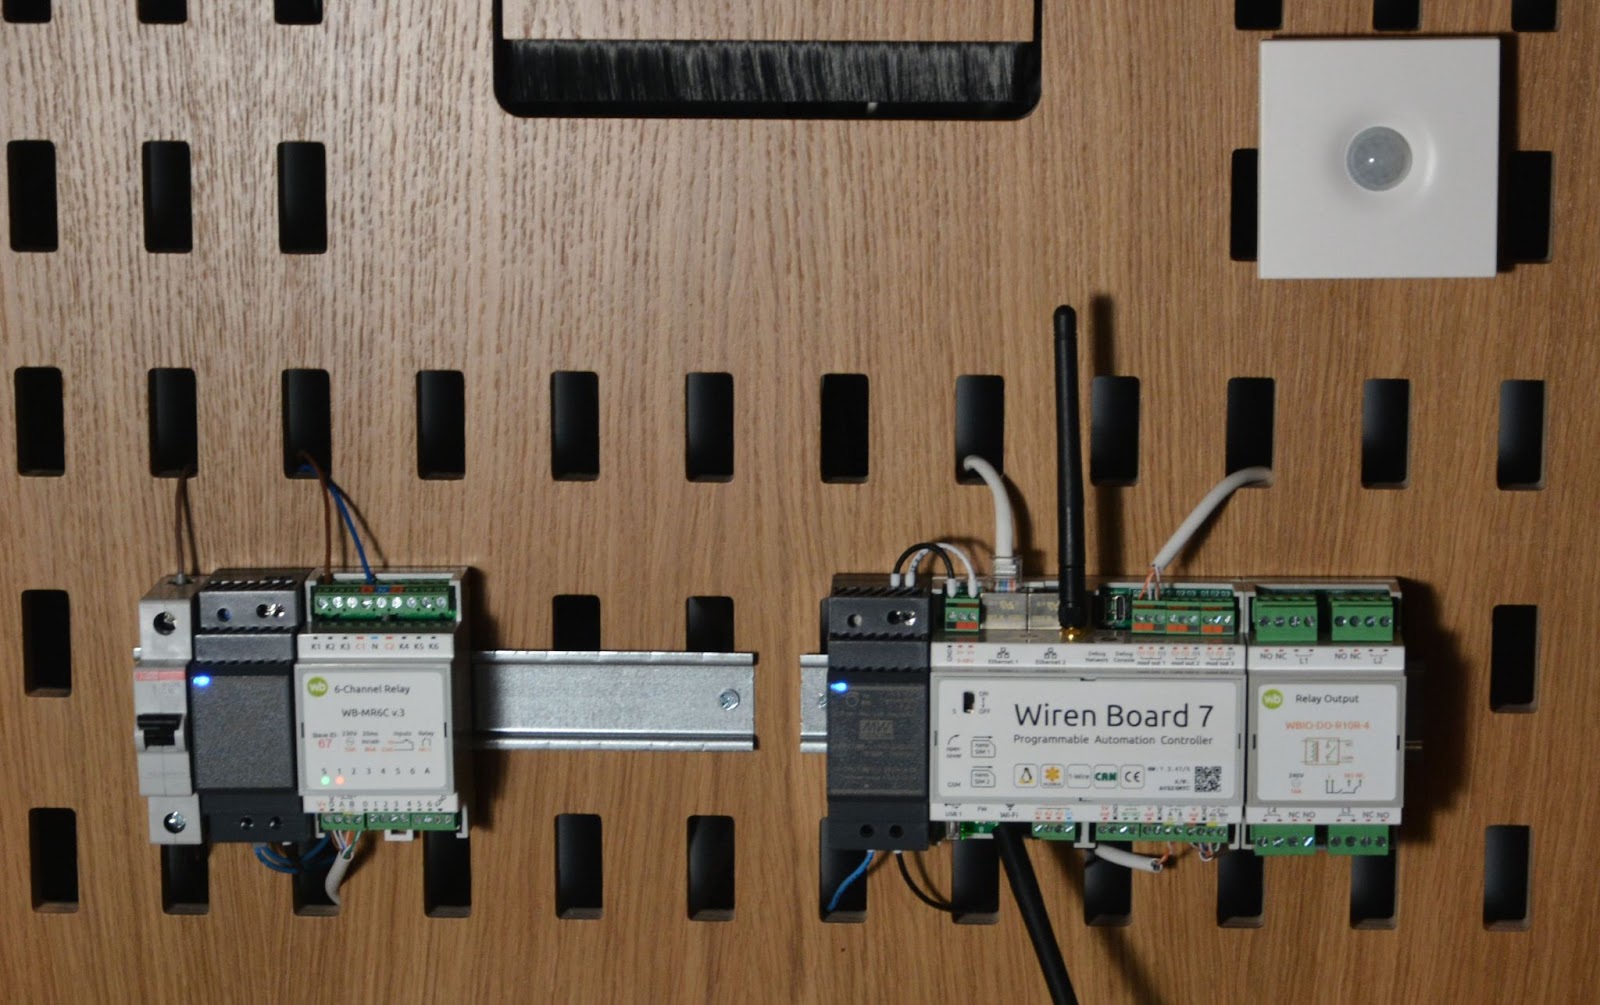 Сердце переговорной комнаты — контроллер Wiren Board 7, дополненный модулями реле и универсальным датчиком  